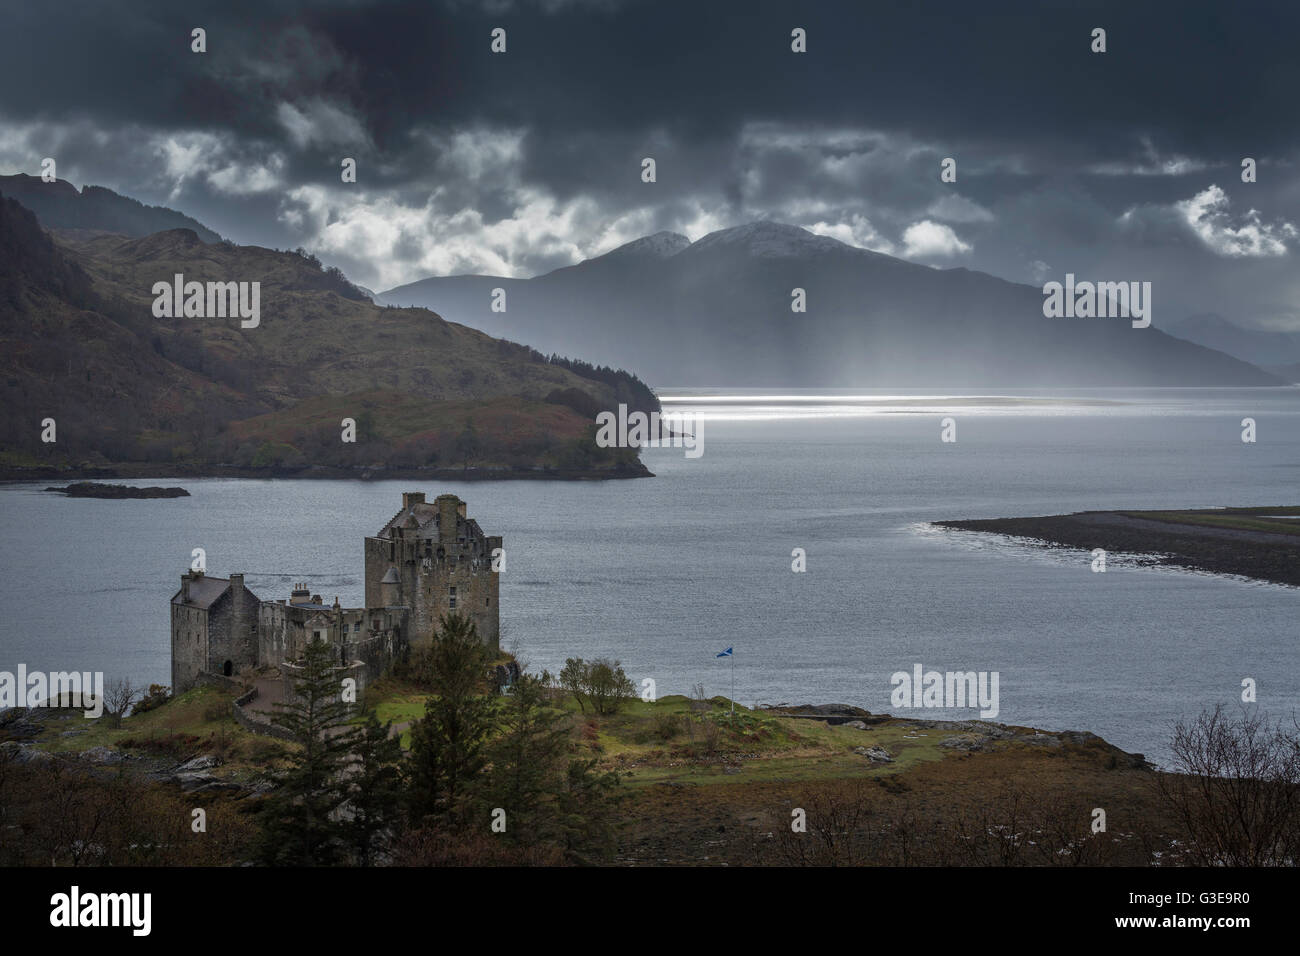 Nuages sombres et bourrasque de pluie sur le Loch Alsh avec le château d'Eilean Donan, Western Highlands, Ecosse Banque D'Images